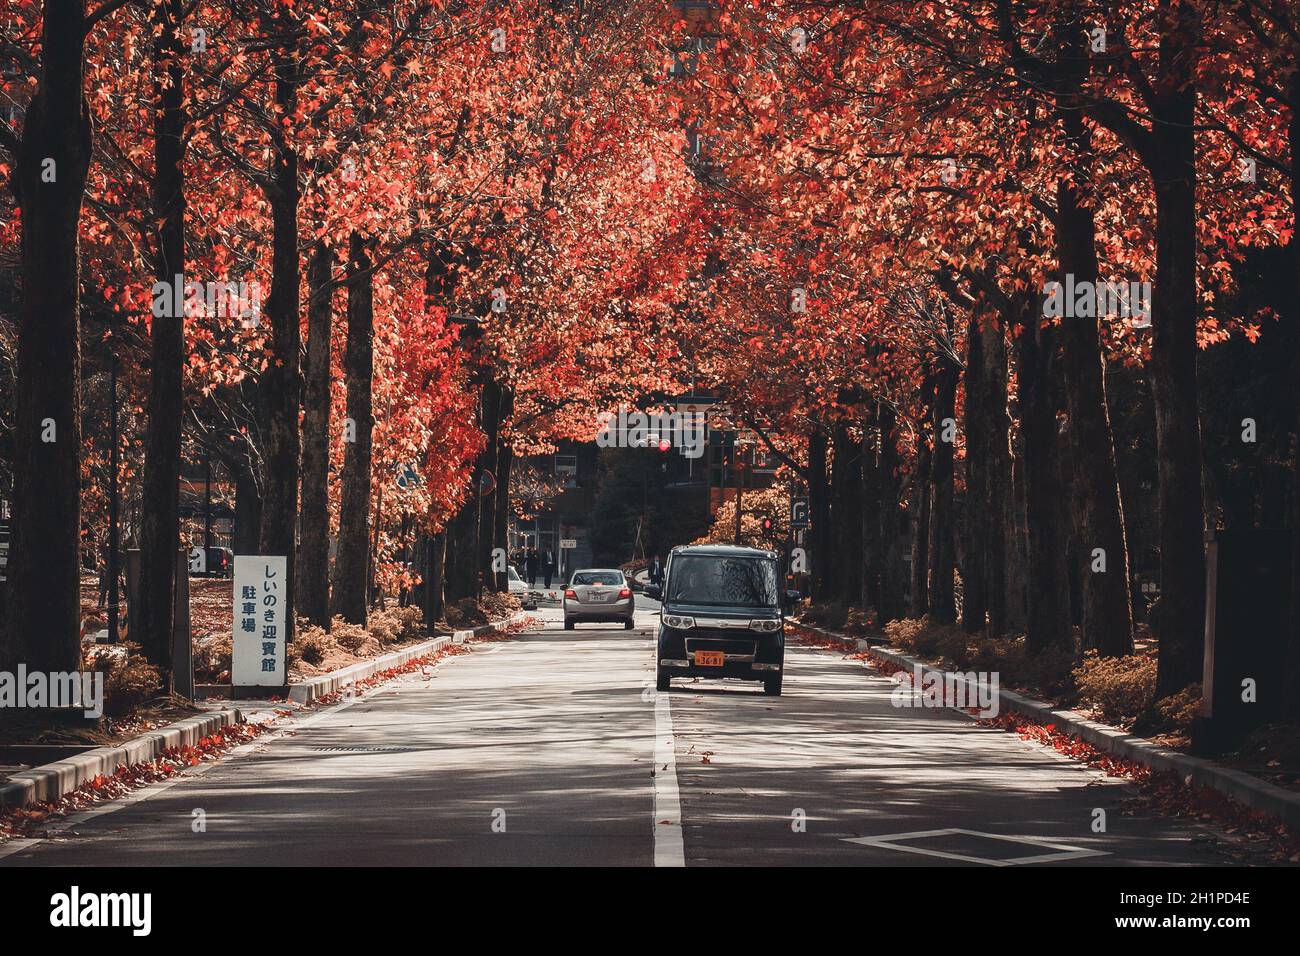 Kanazawa, Giappone - 15 novembre 2018: Automobili che guidano lungo la strada attraverso il vicolo colorato dell'albero dell'acero d'autunno. La visione dei colori che cambiano in autunno Foto Stock